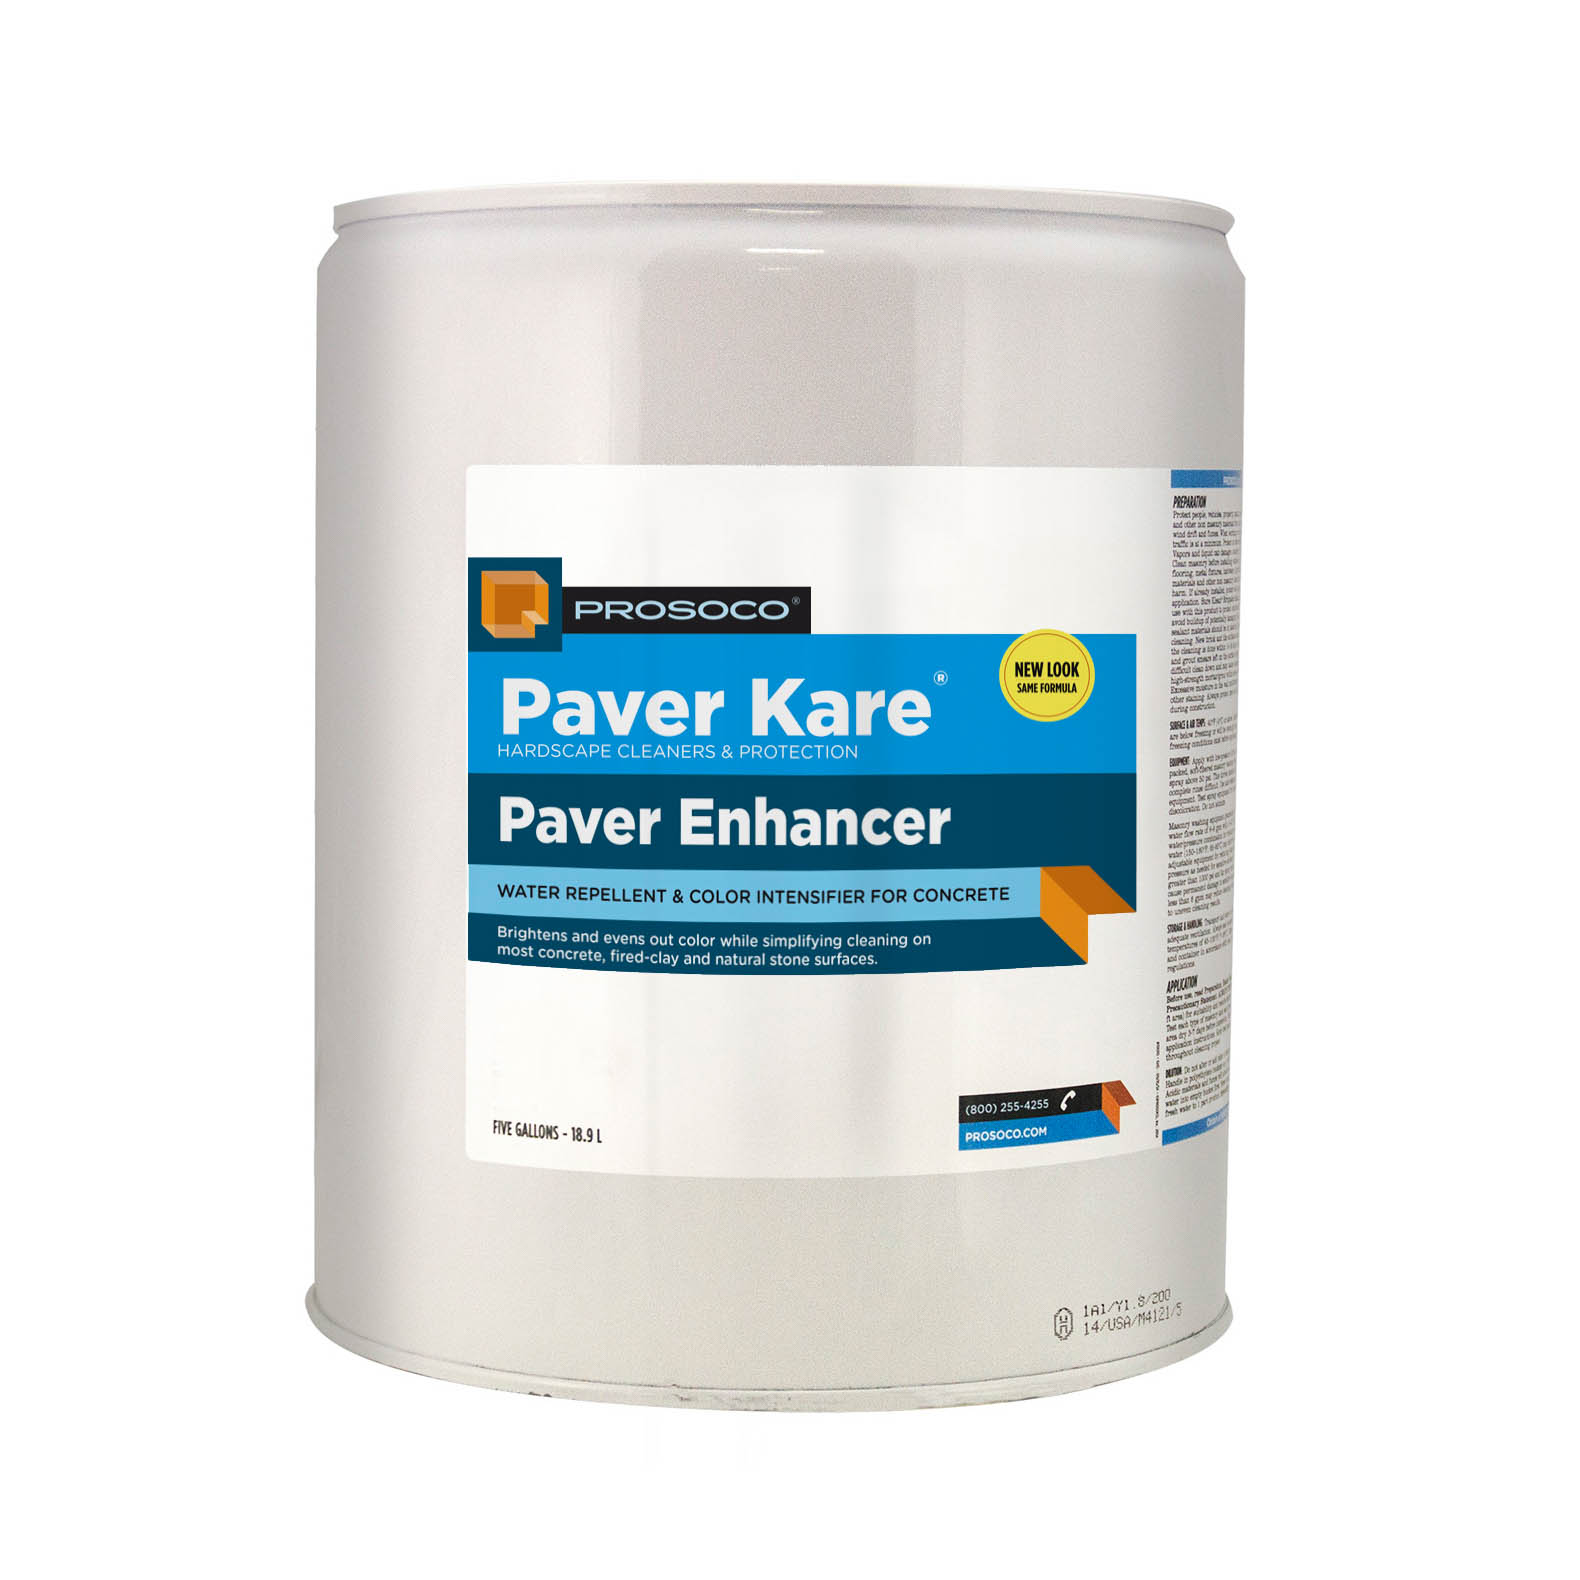 Prosoco Paver Kare Paver Enhancer, 5-gal.